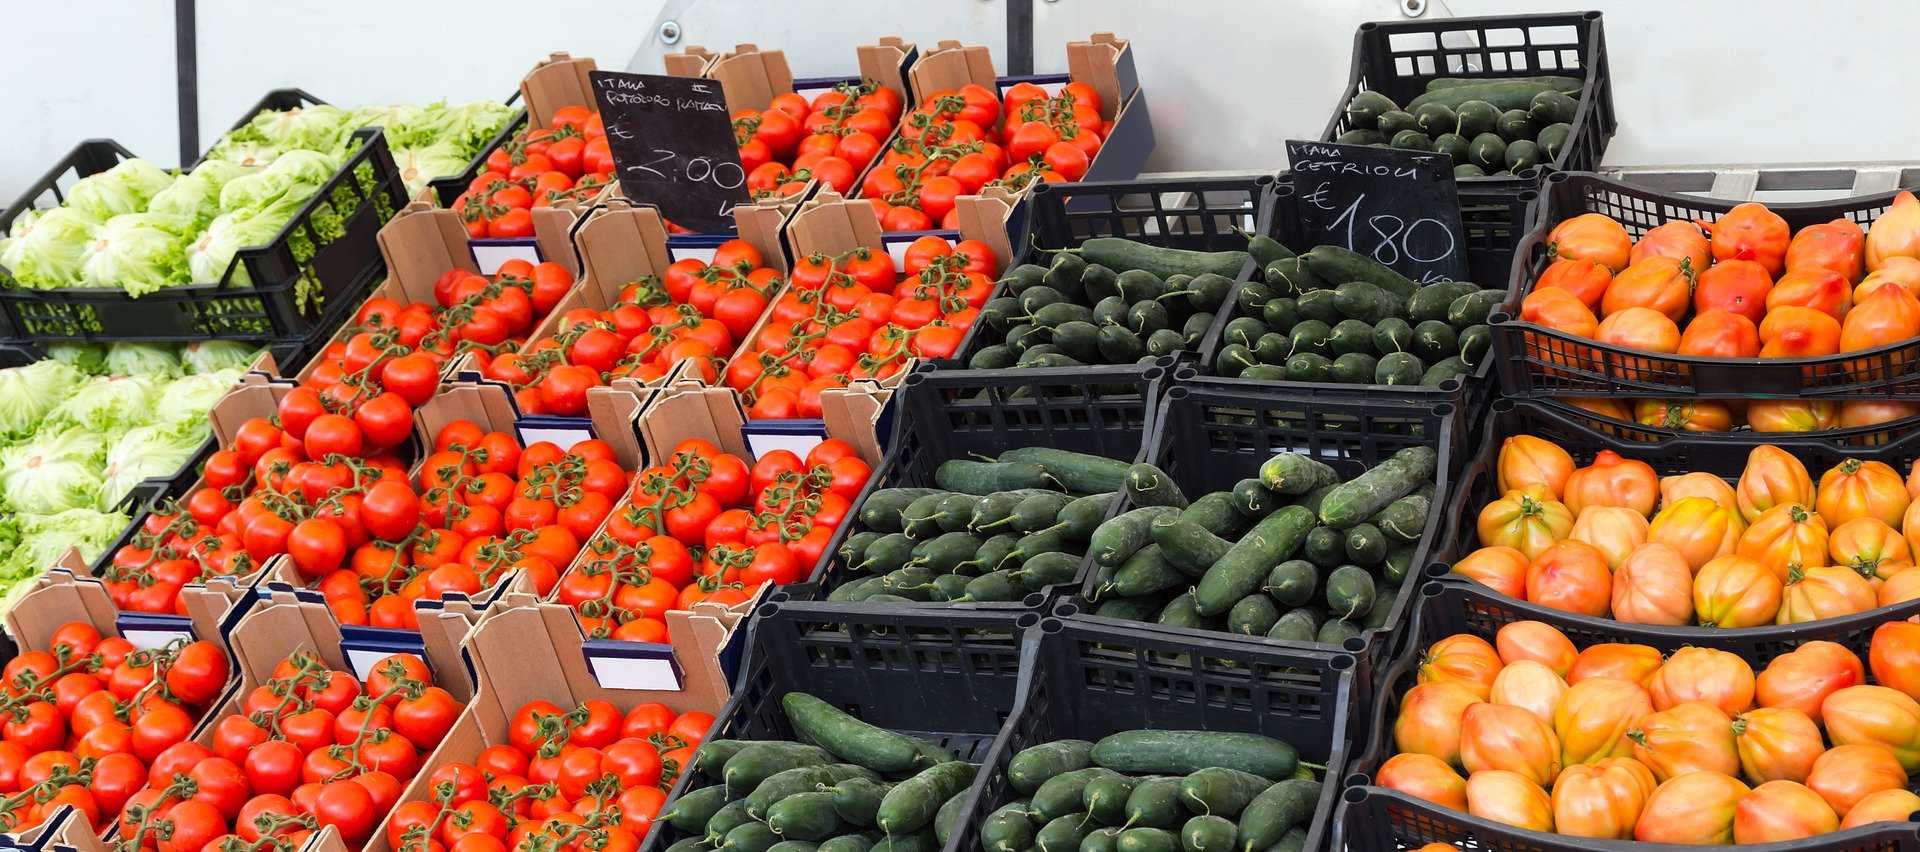 На прилавках магазинов лежат отборные овощи. Прилавок с овощами и фруктами. Овощной прилавок. Фрукты овощи ассортимент. Овощи на рынке.